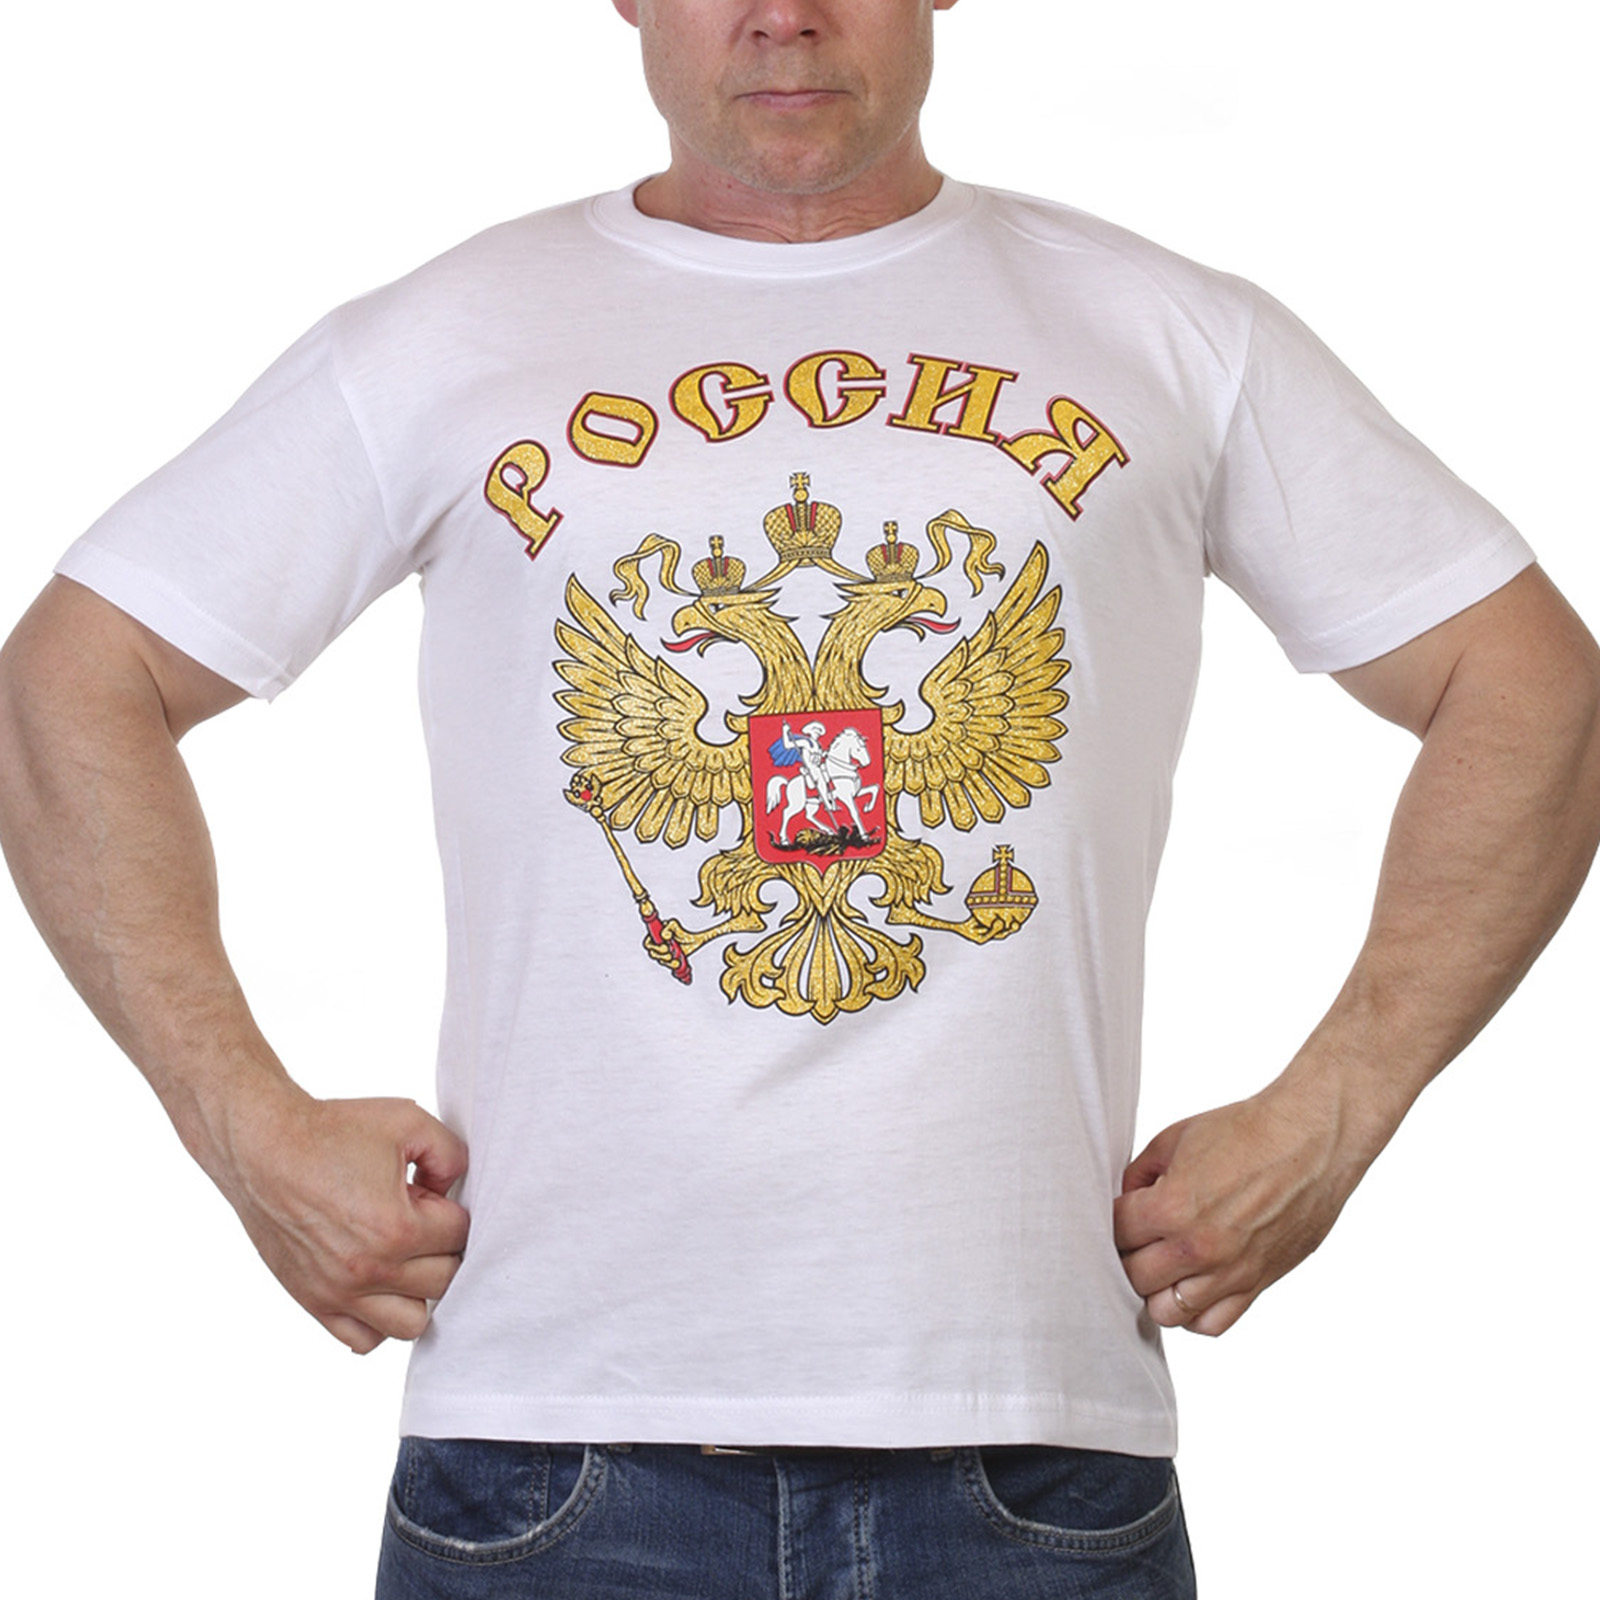 Купить футболку Россия по выгодной цене